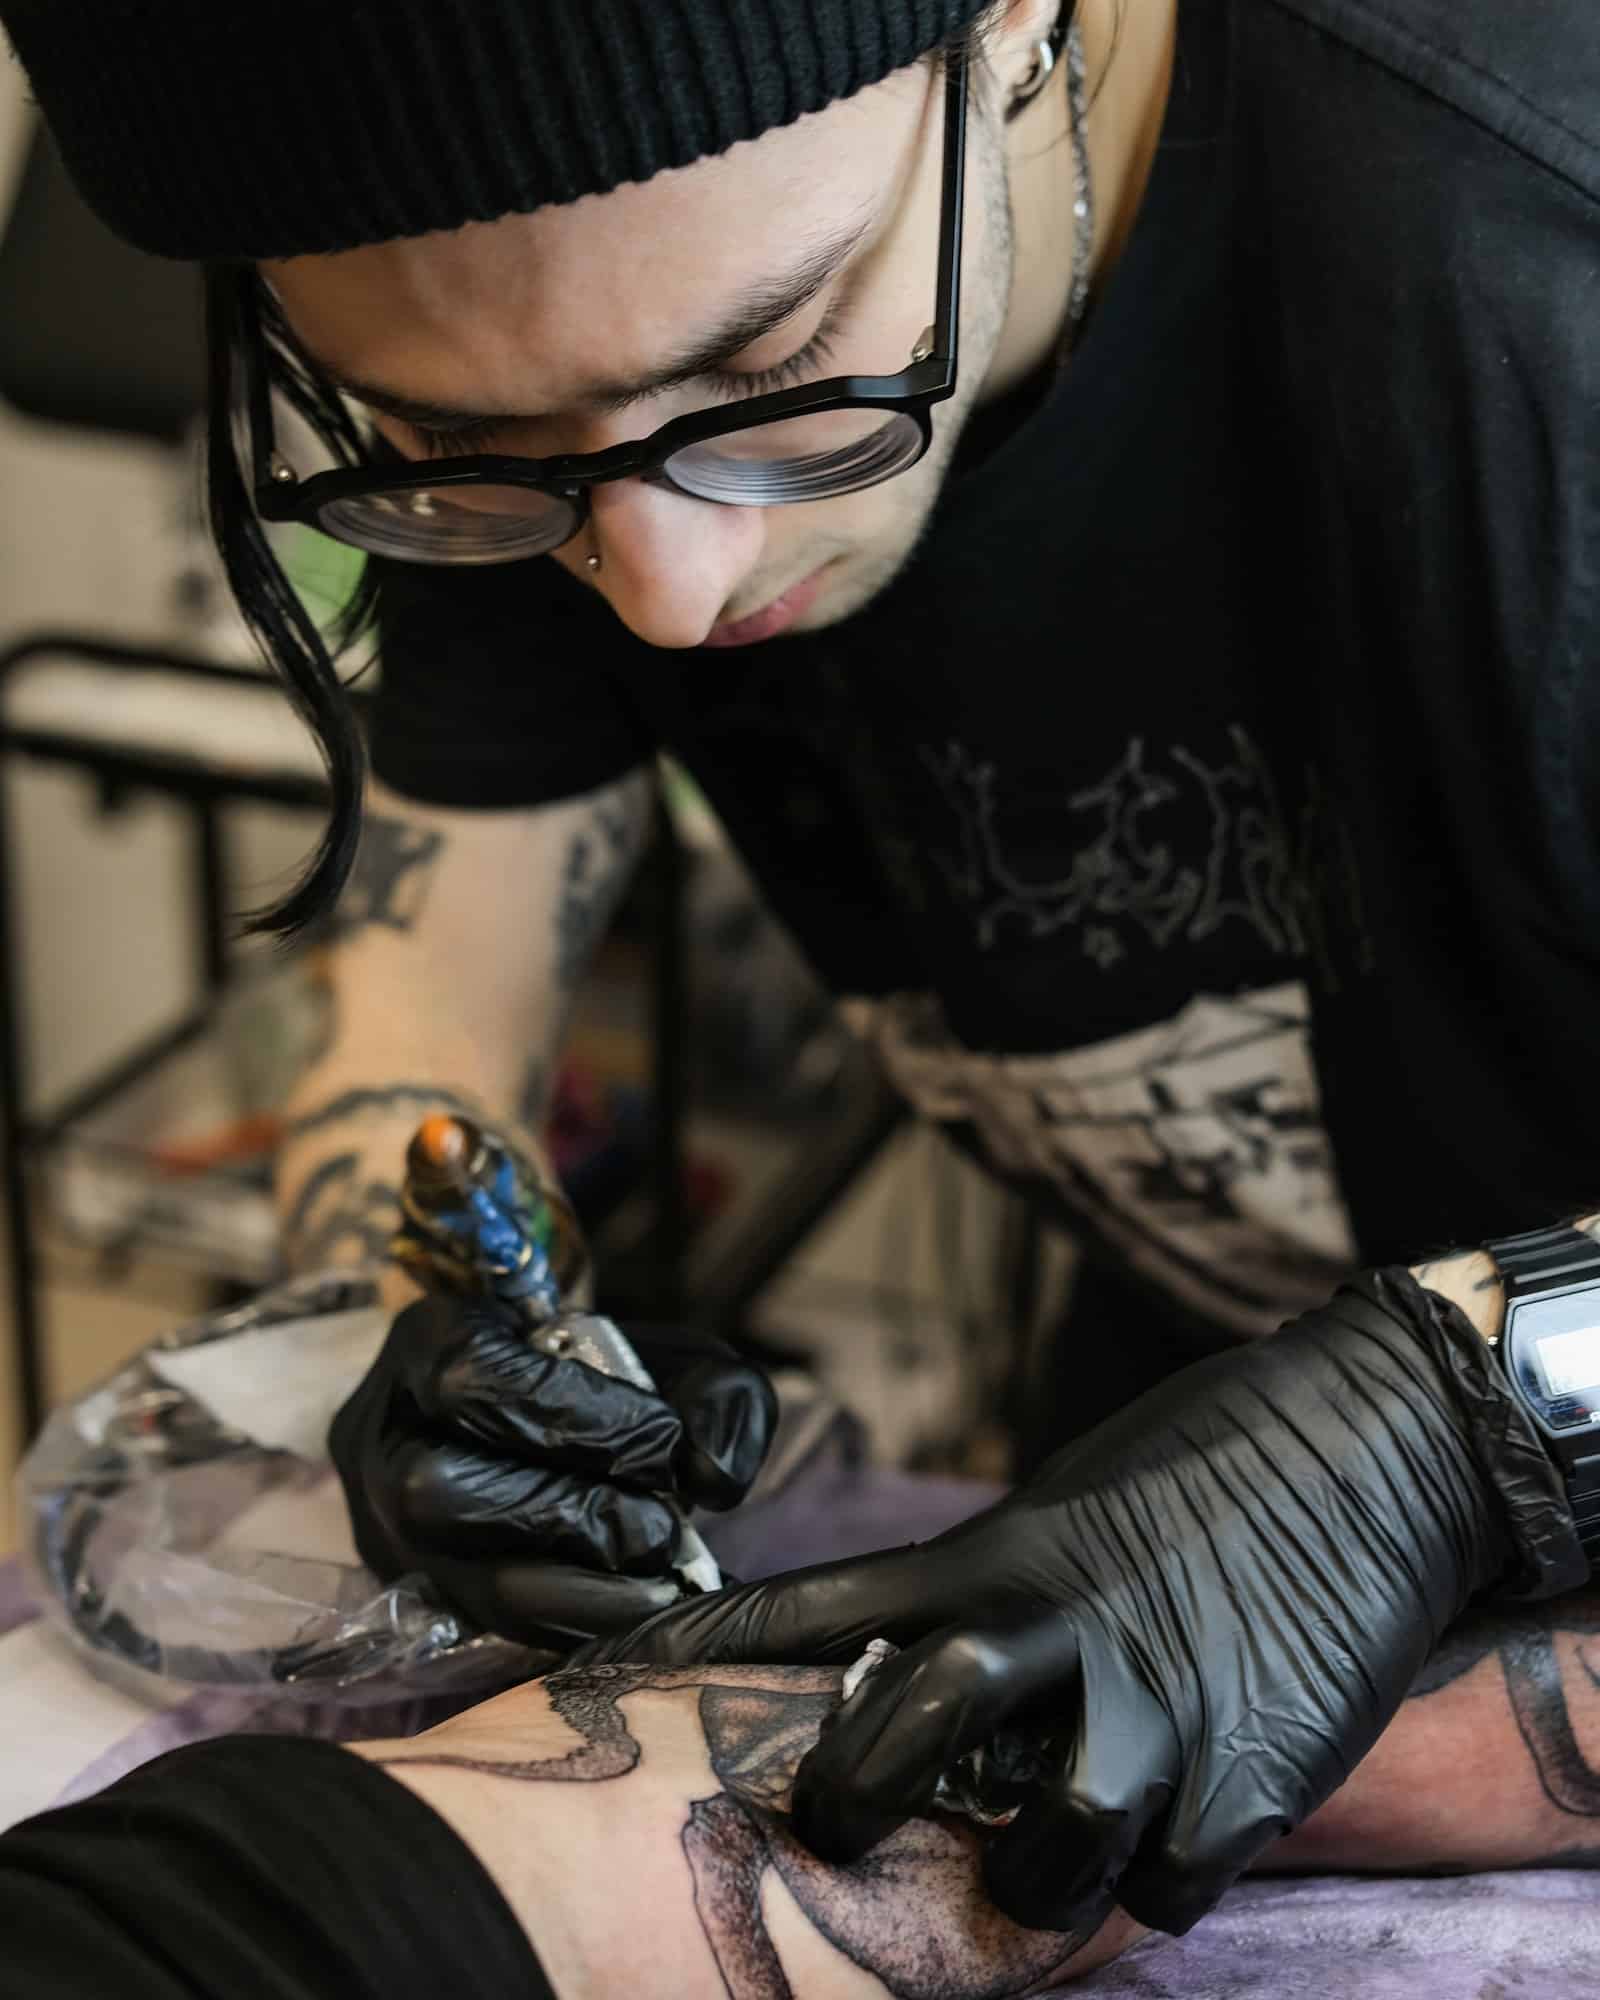 Professional tattoo artist stuffs a tattoo on the man's hand. Small business.